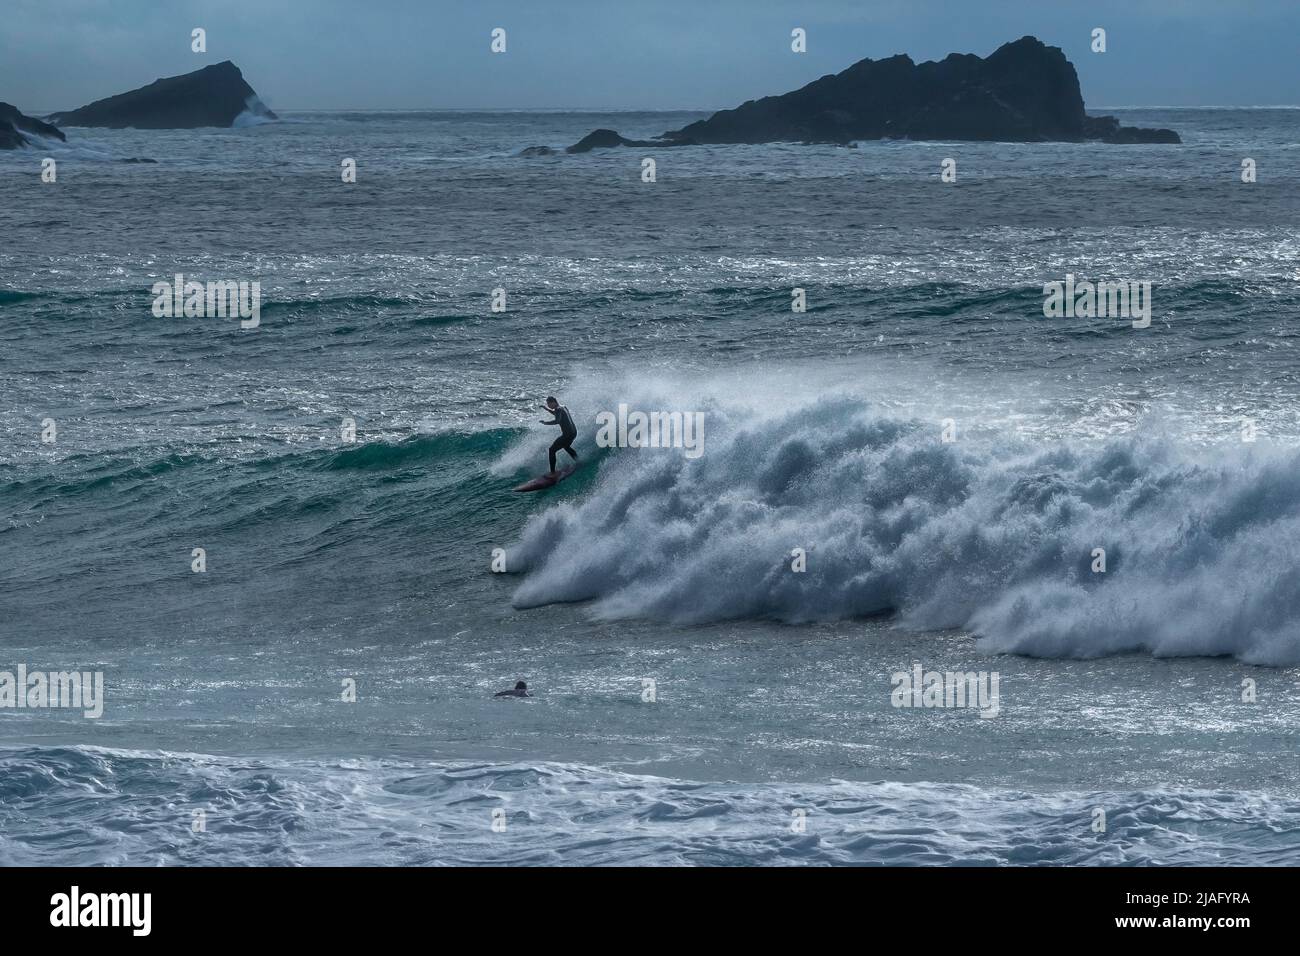 Spettacolare azione di surf come surfista cavalca la cresta di un'onda a Fistral con l'isola rocciosa l'Oca sullo sfondo a Newquay in Cornovaglia i. Foto Stock